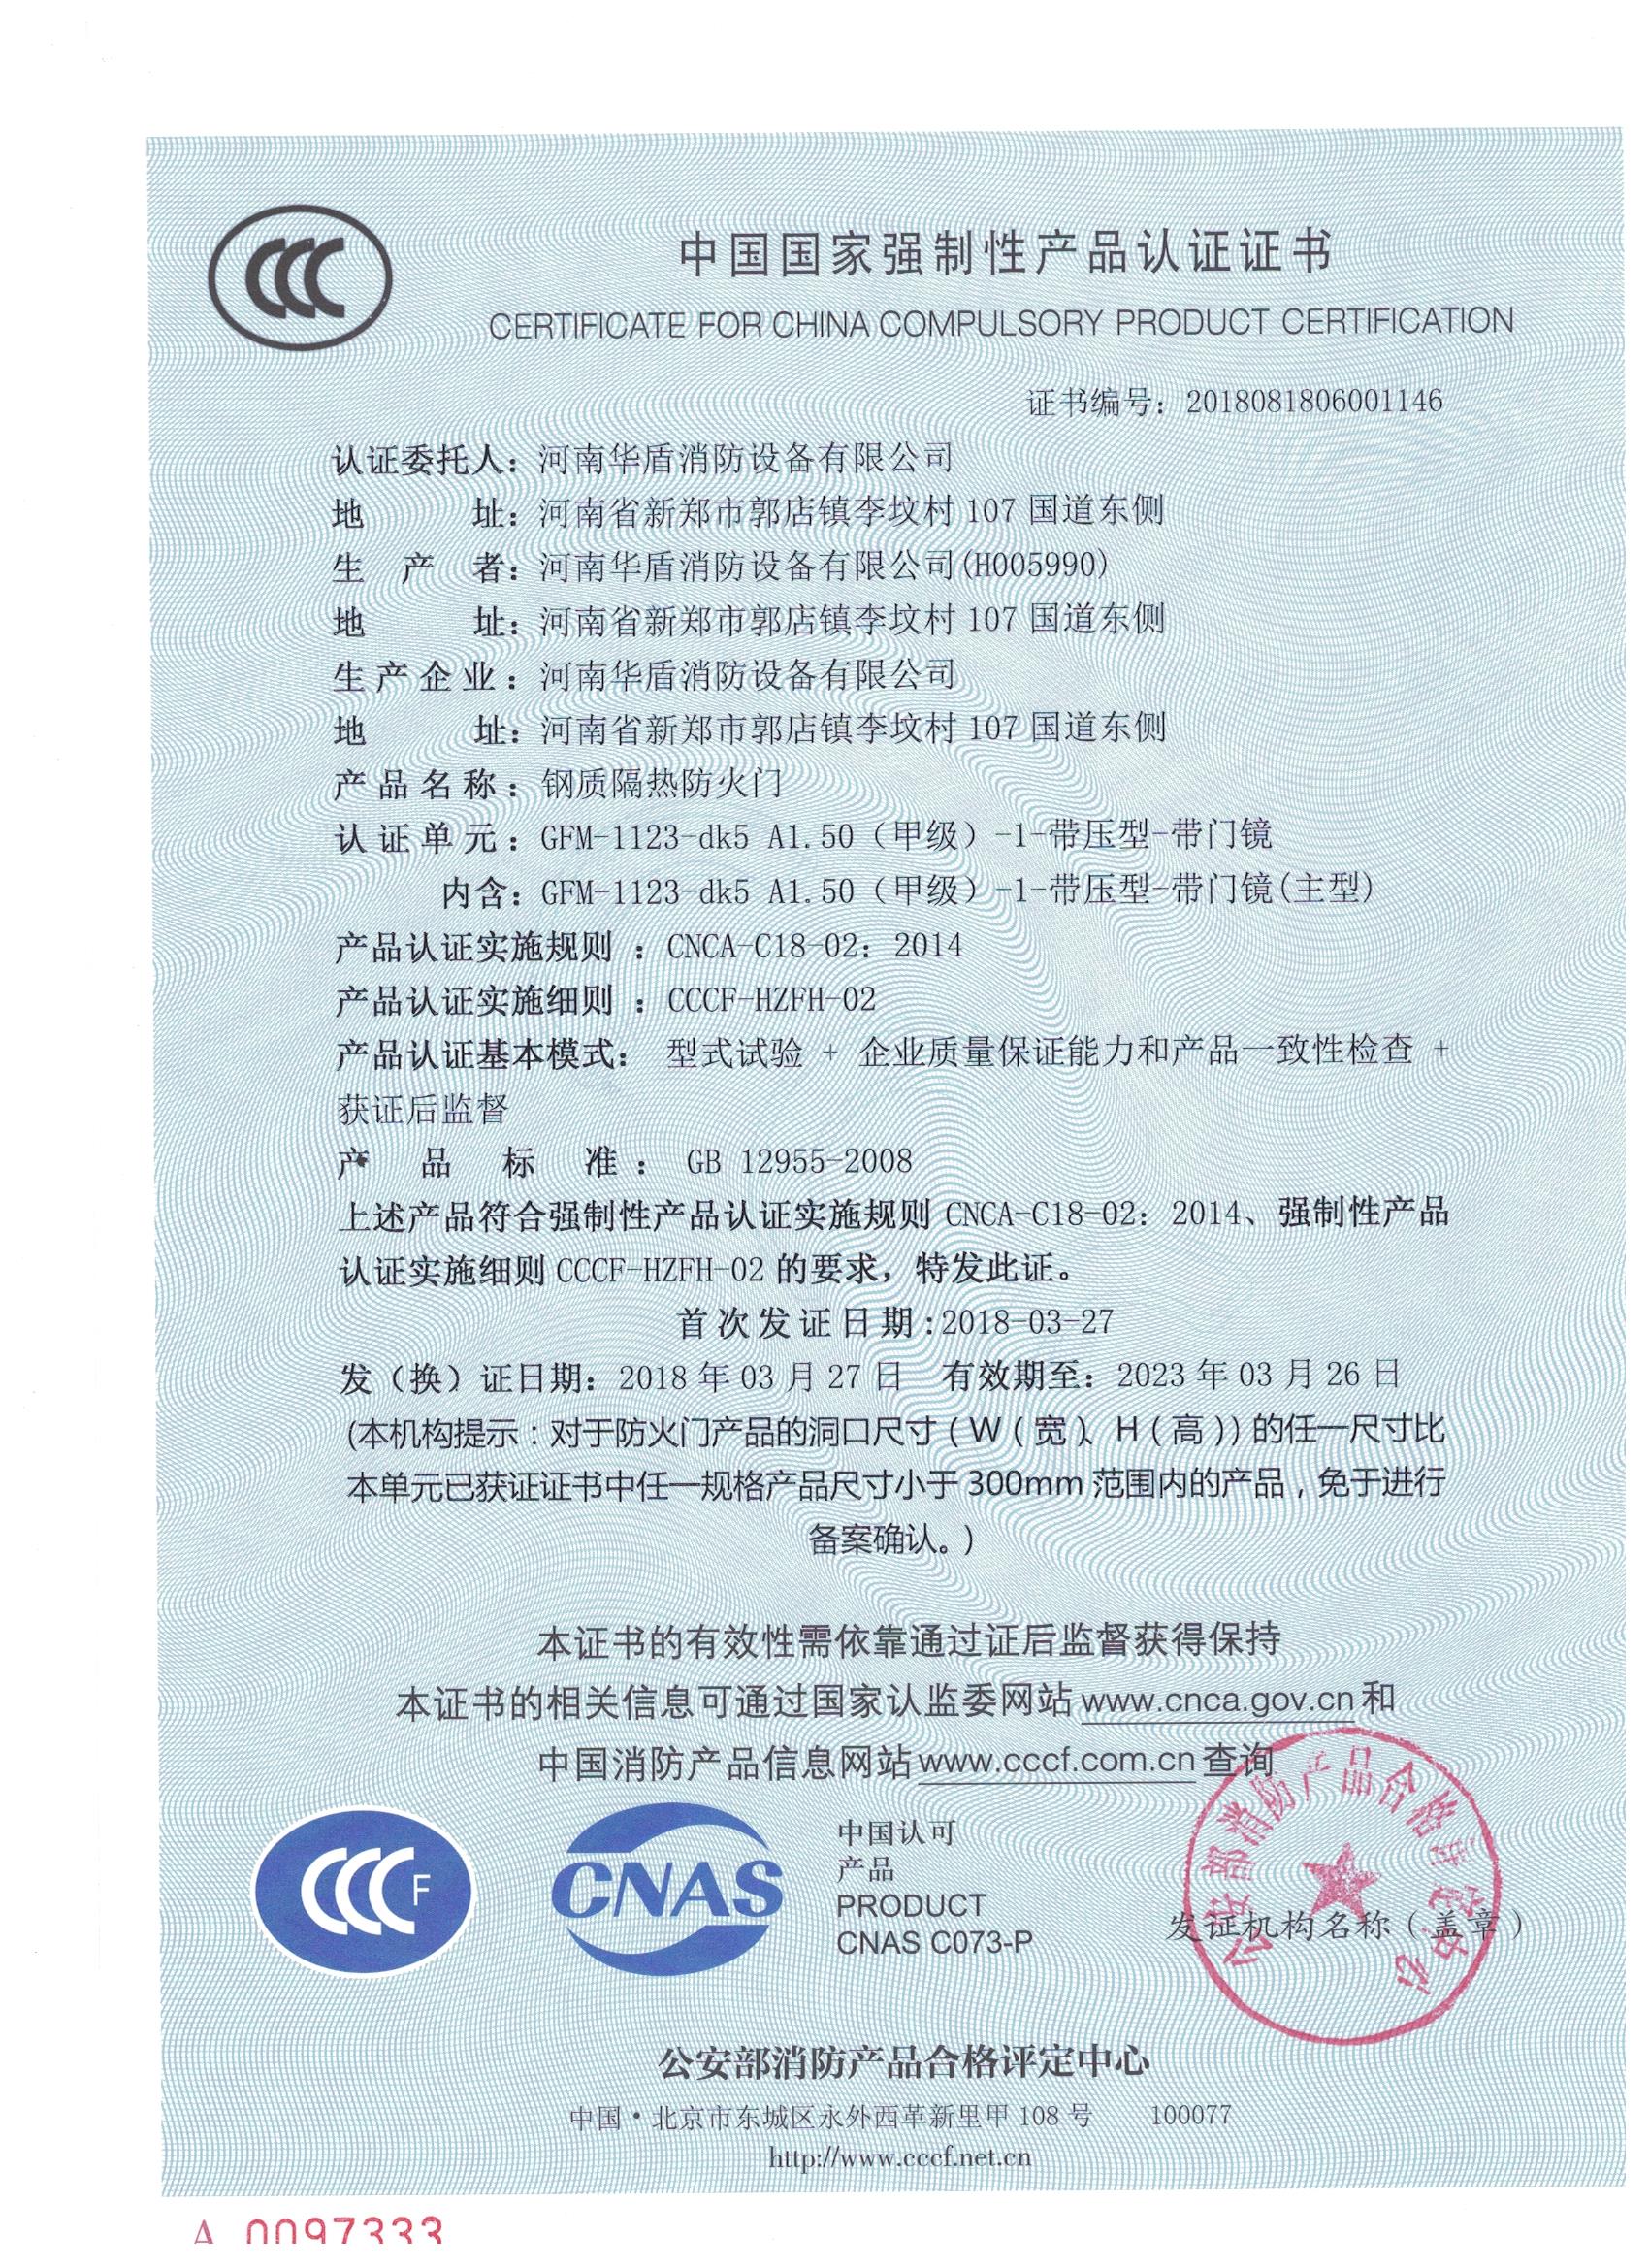 郑州GFM-1123-dk5A1.50(甲级）-1-3C证书